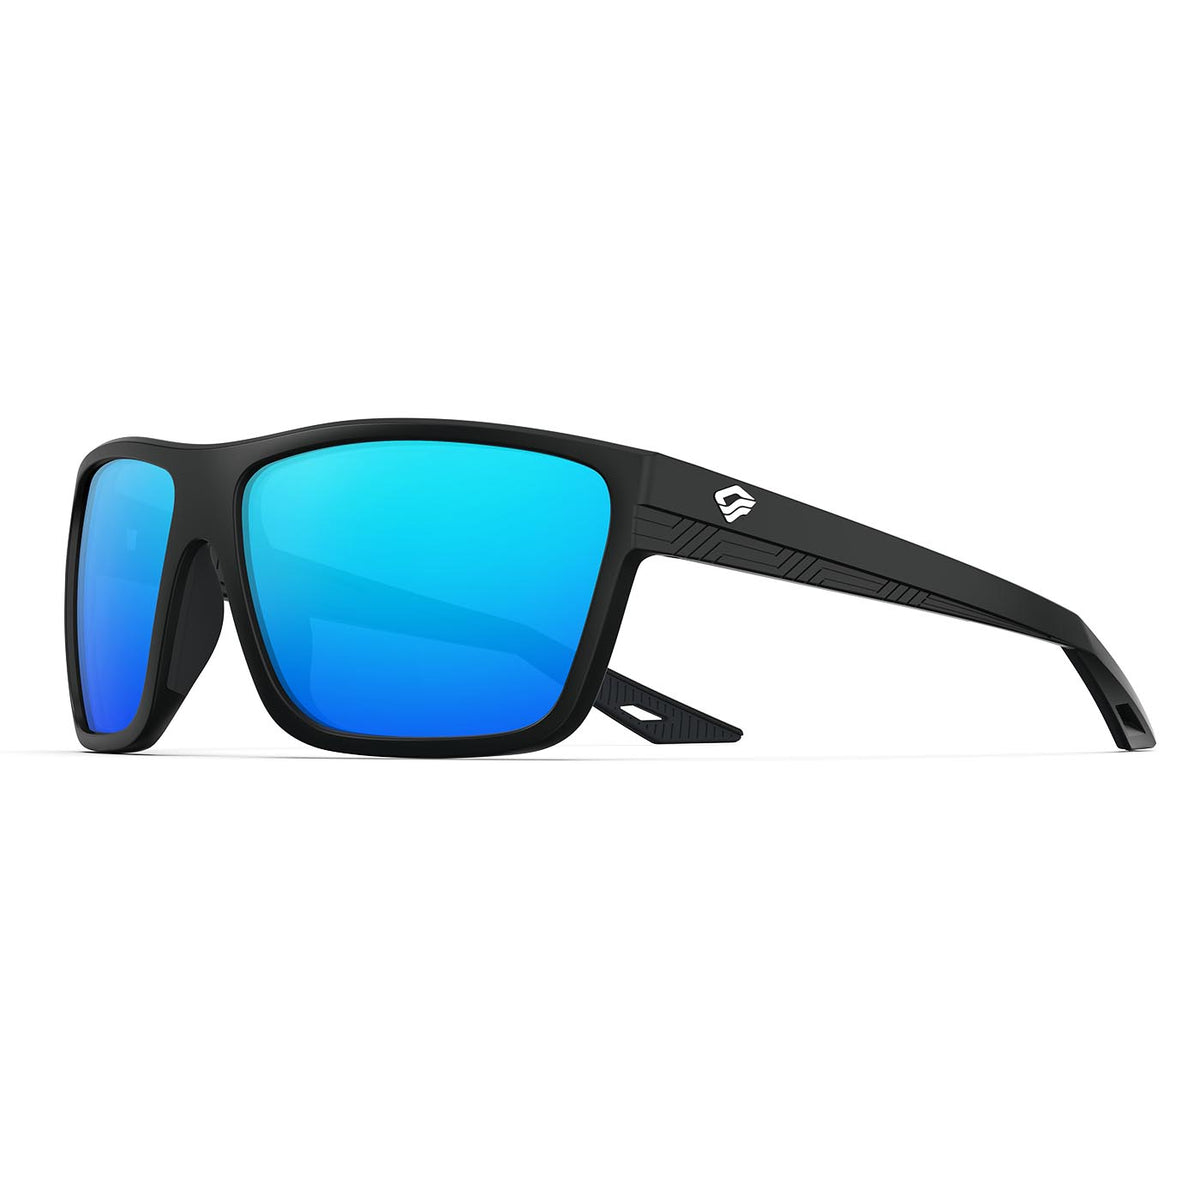 Icebreaker Sports Polarized Sunglasses - Lifetime Warranty - Men & Women Glasses  for Golf, Fishing, and More - Black Frame & Blue Lens